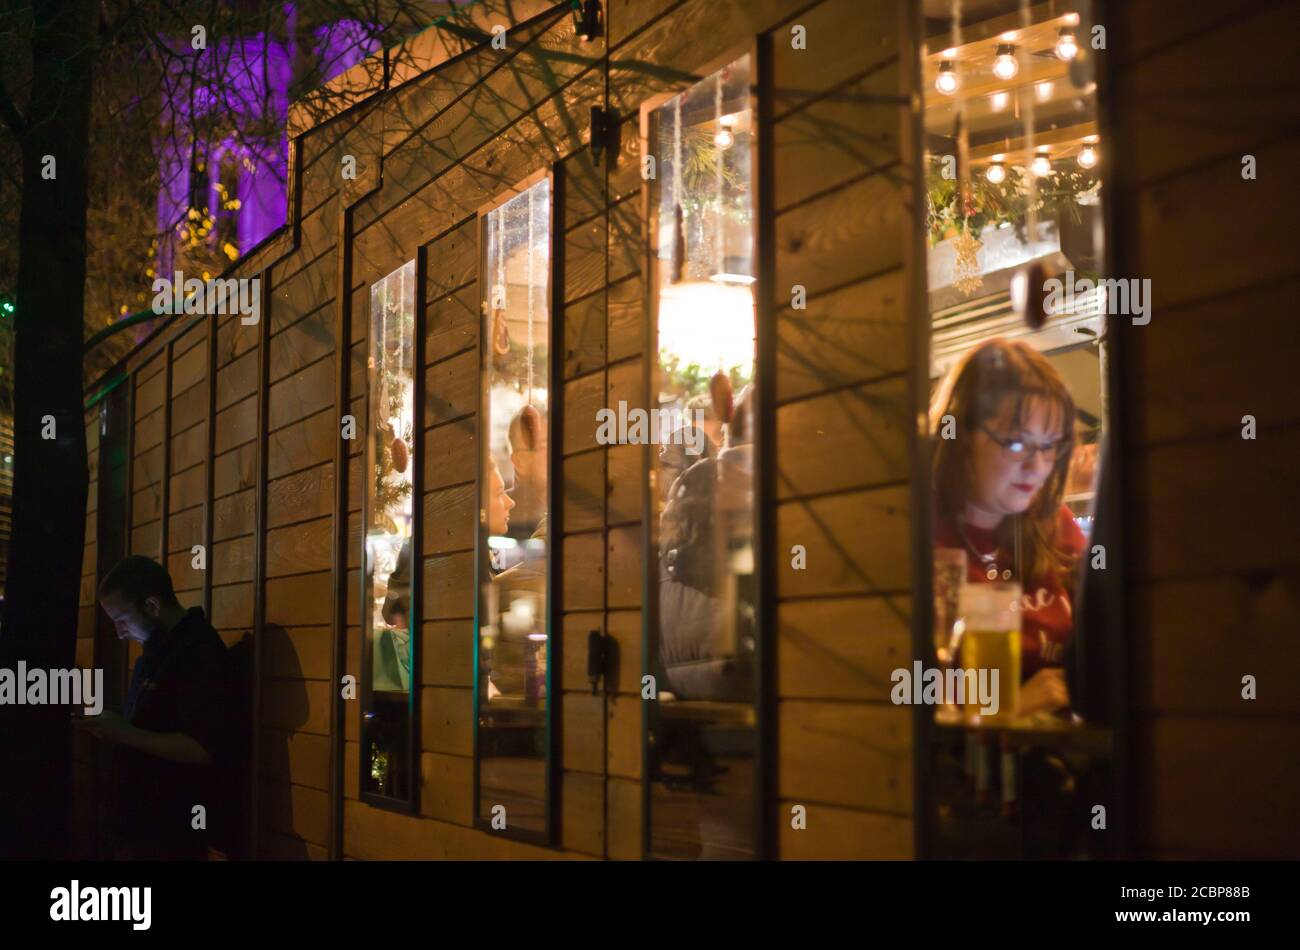 Una donna all'interno di un bar di cabina sul suo telefono, un uomo all'esterno che guarda il suo telefono, mercatino di Natale, feste, birra, notte fuori, fotografia di strada Foto Stock